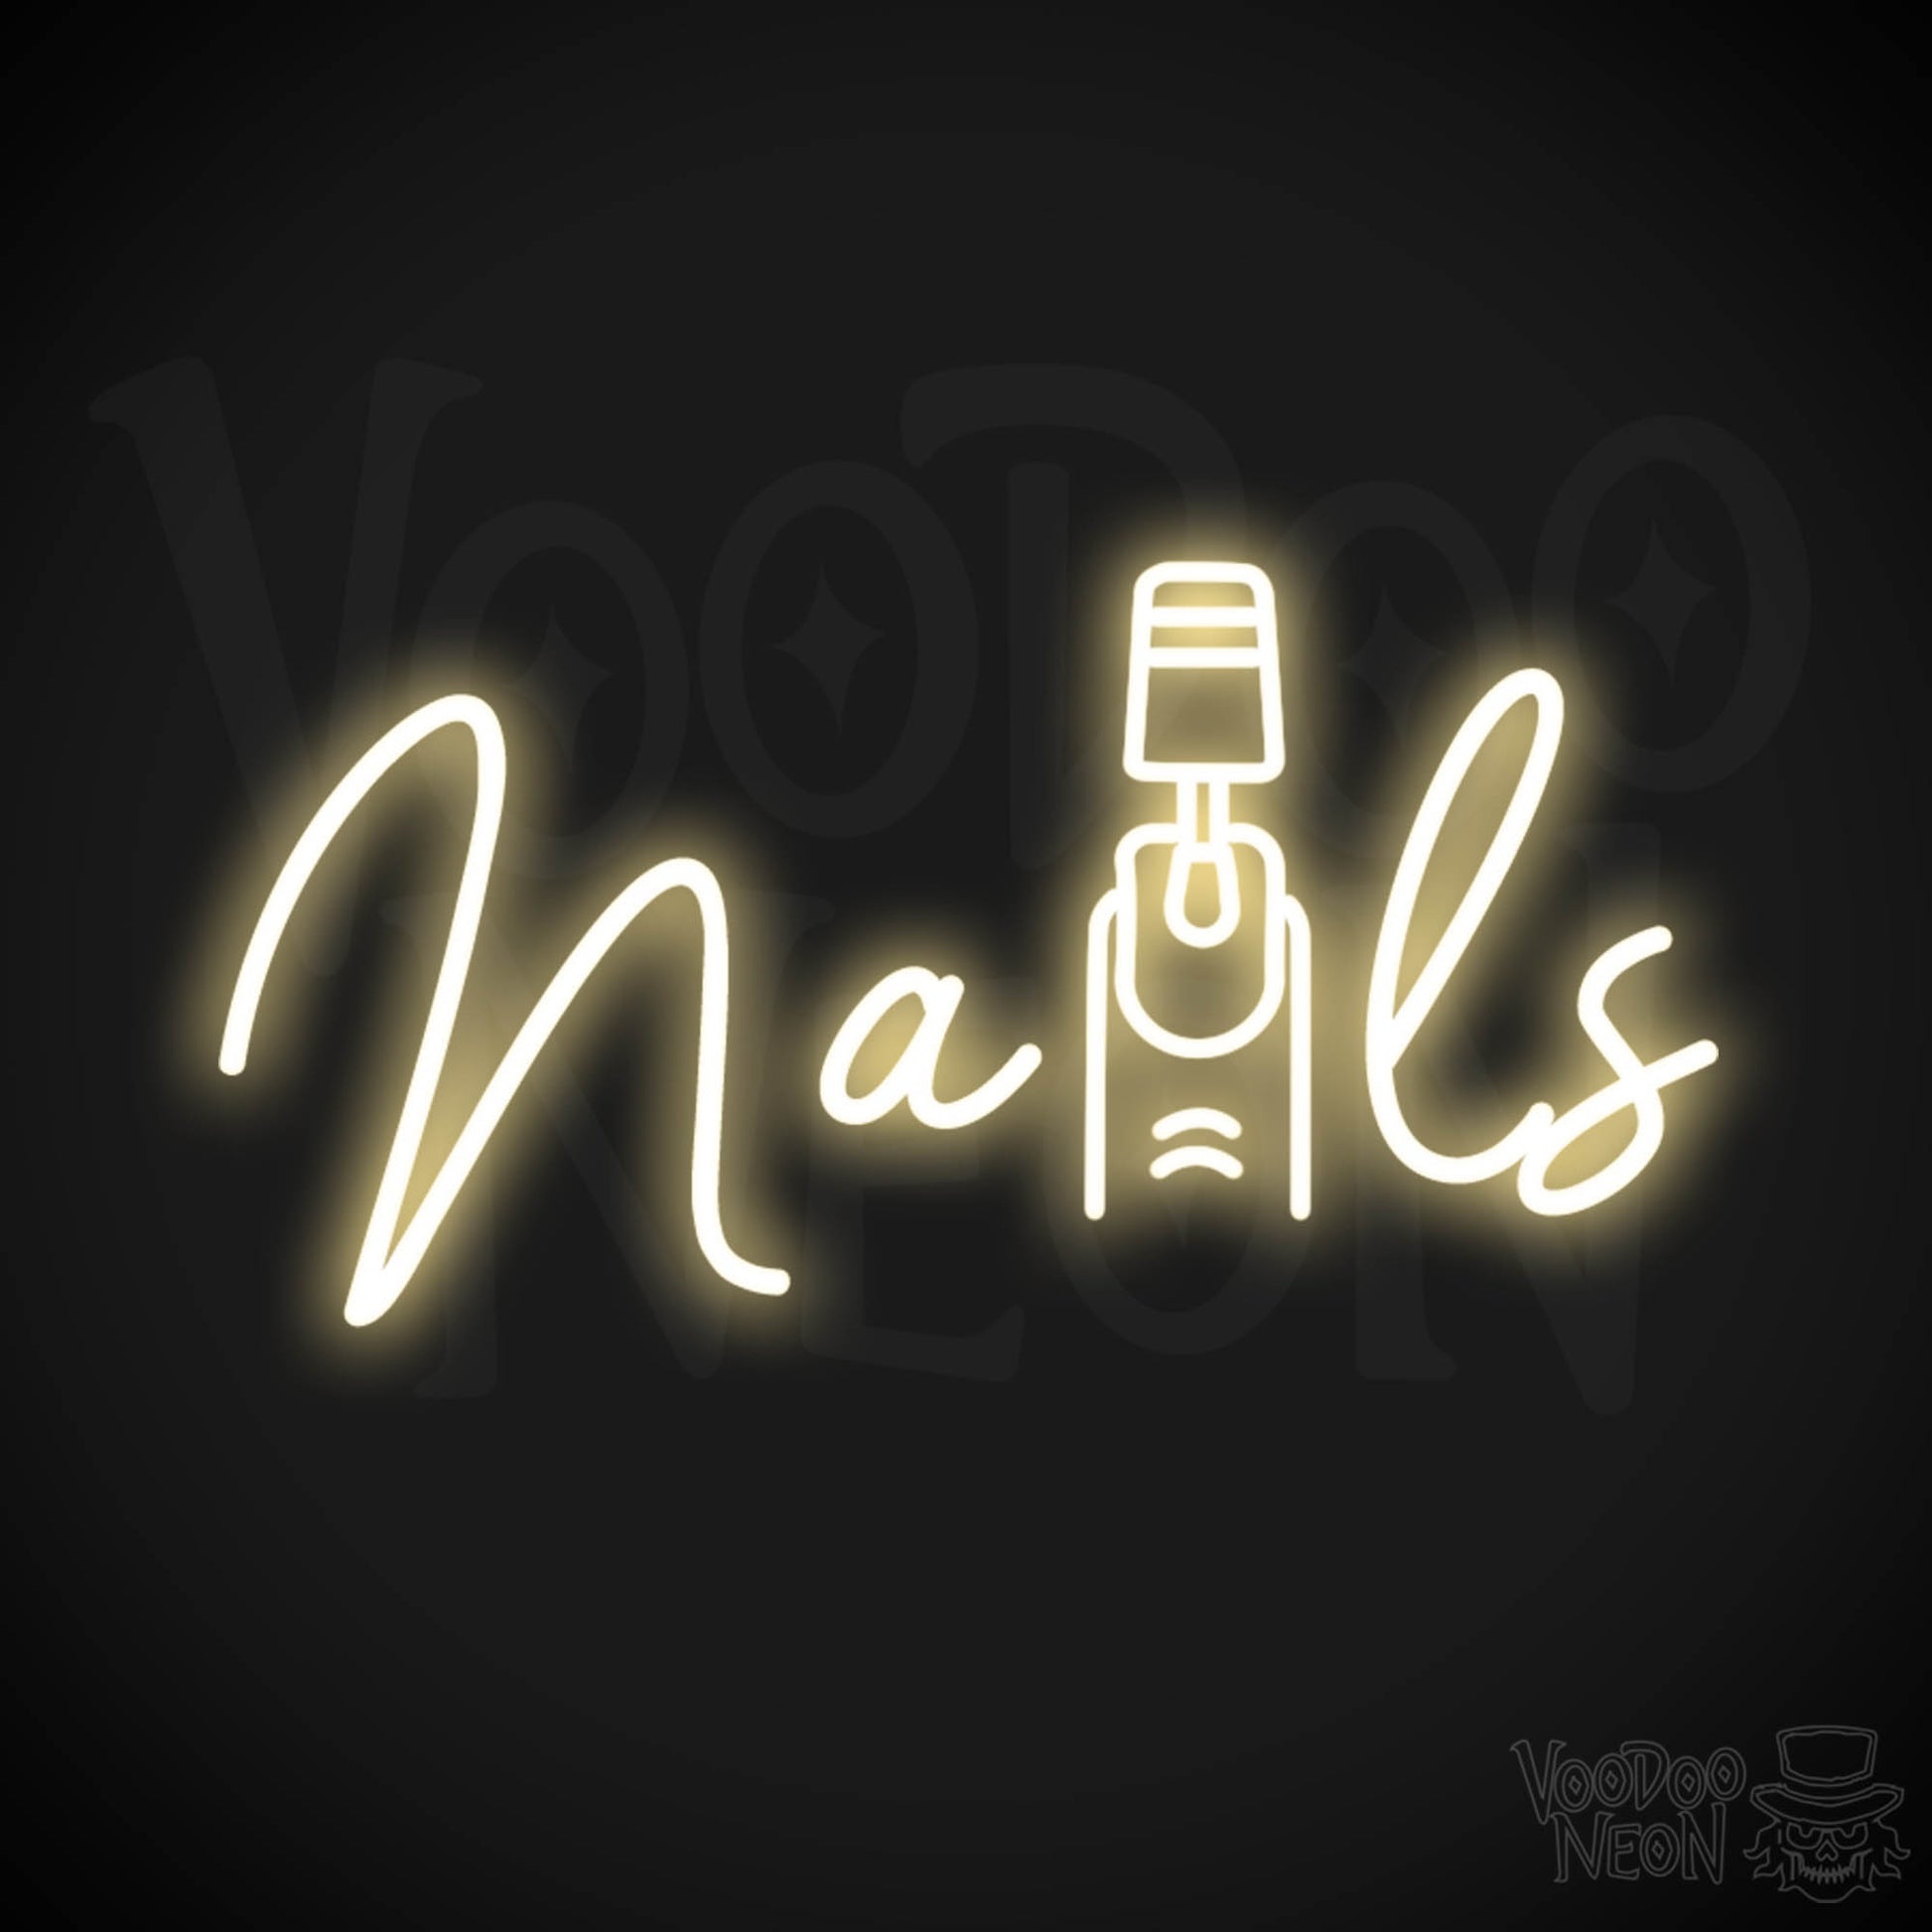 Nails Neon Sign - Nail Salon Sign - Neon Nails Sign - Nail Salon Wall Art - Color Warm White